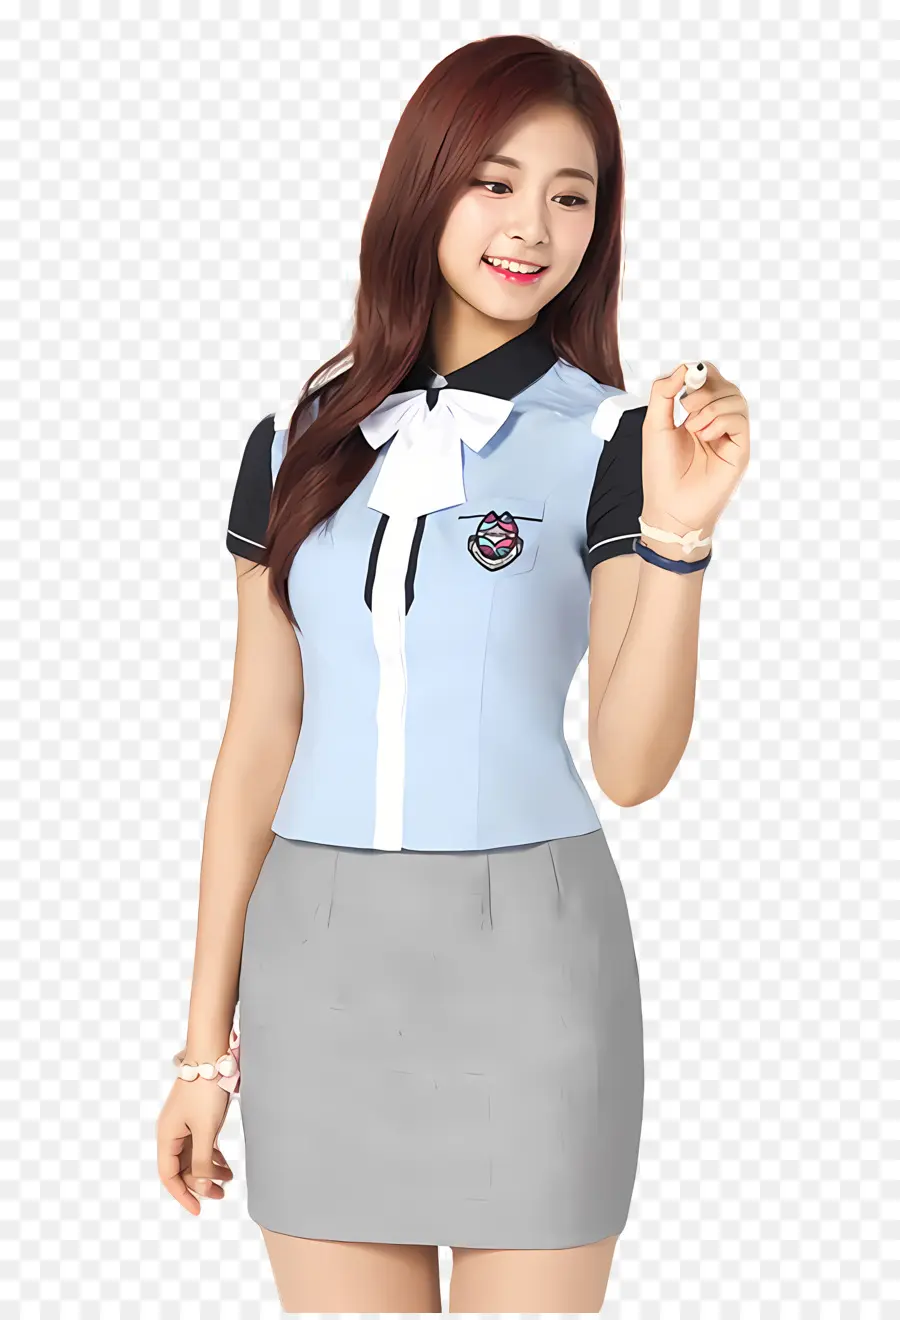 Đồng phục trường học - Cô gái cười mặc đồng phục màu xanh